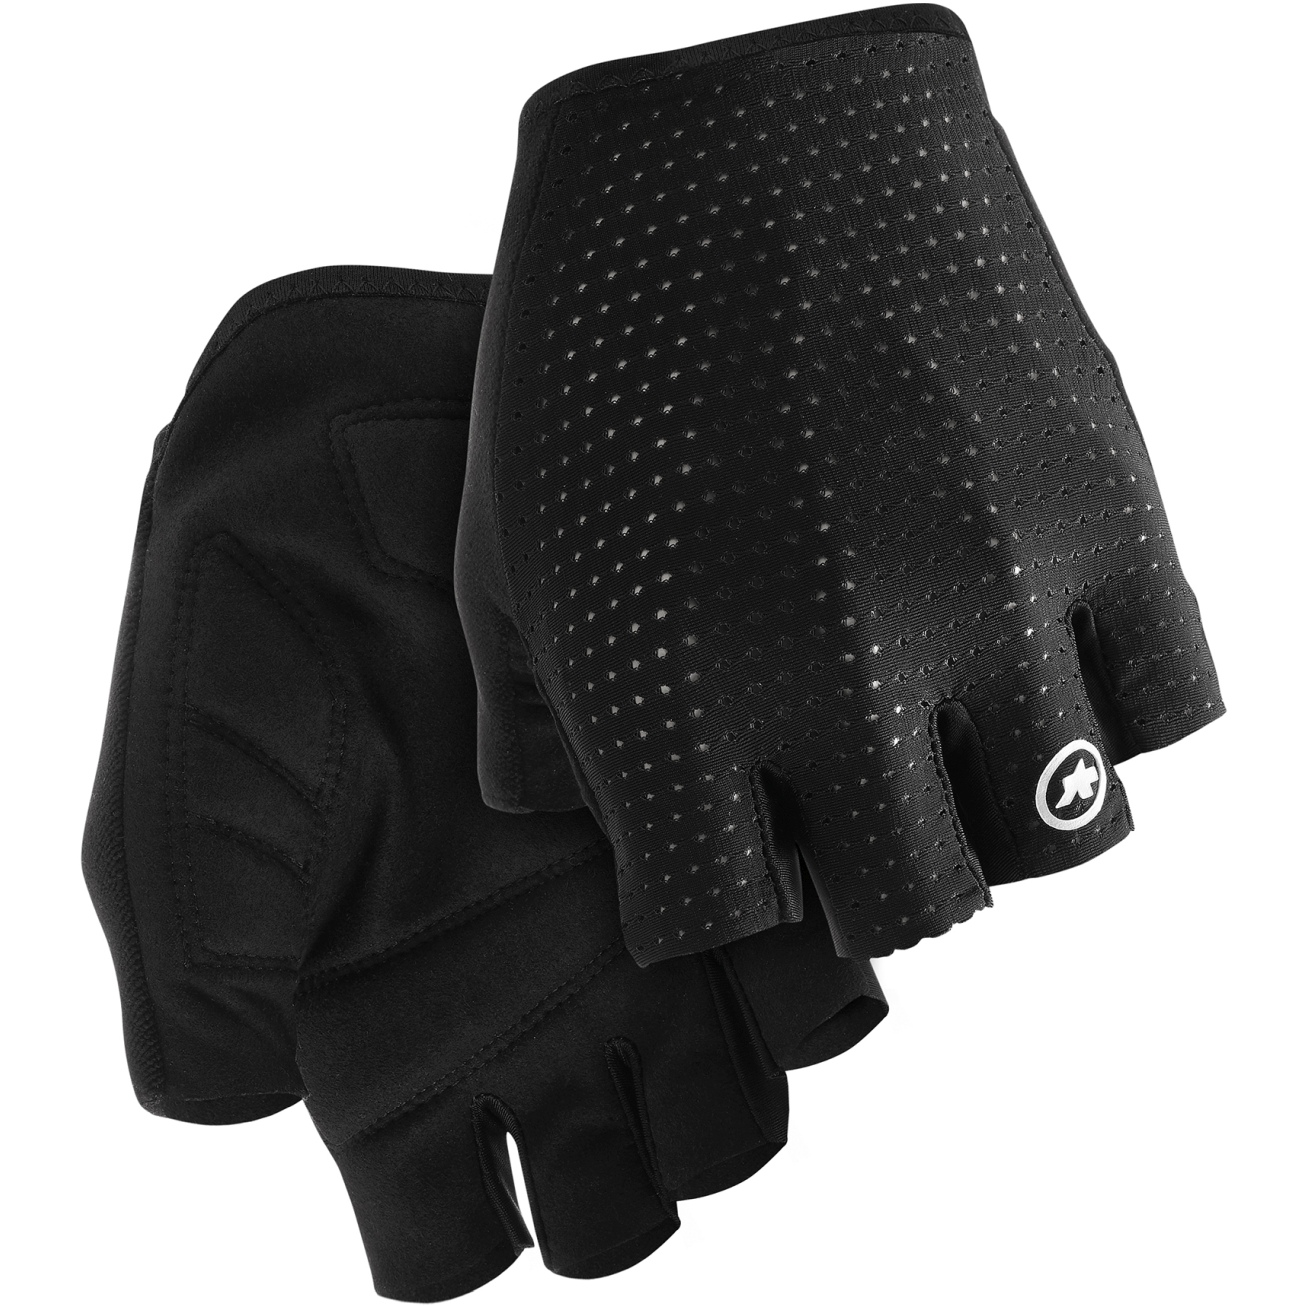 Productfoto van Assos GT C2 Handschoenen met Korte Vingers - black series